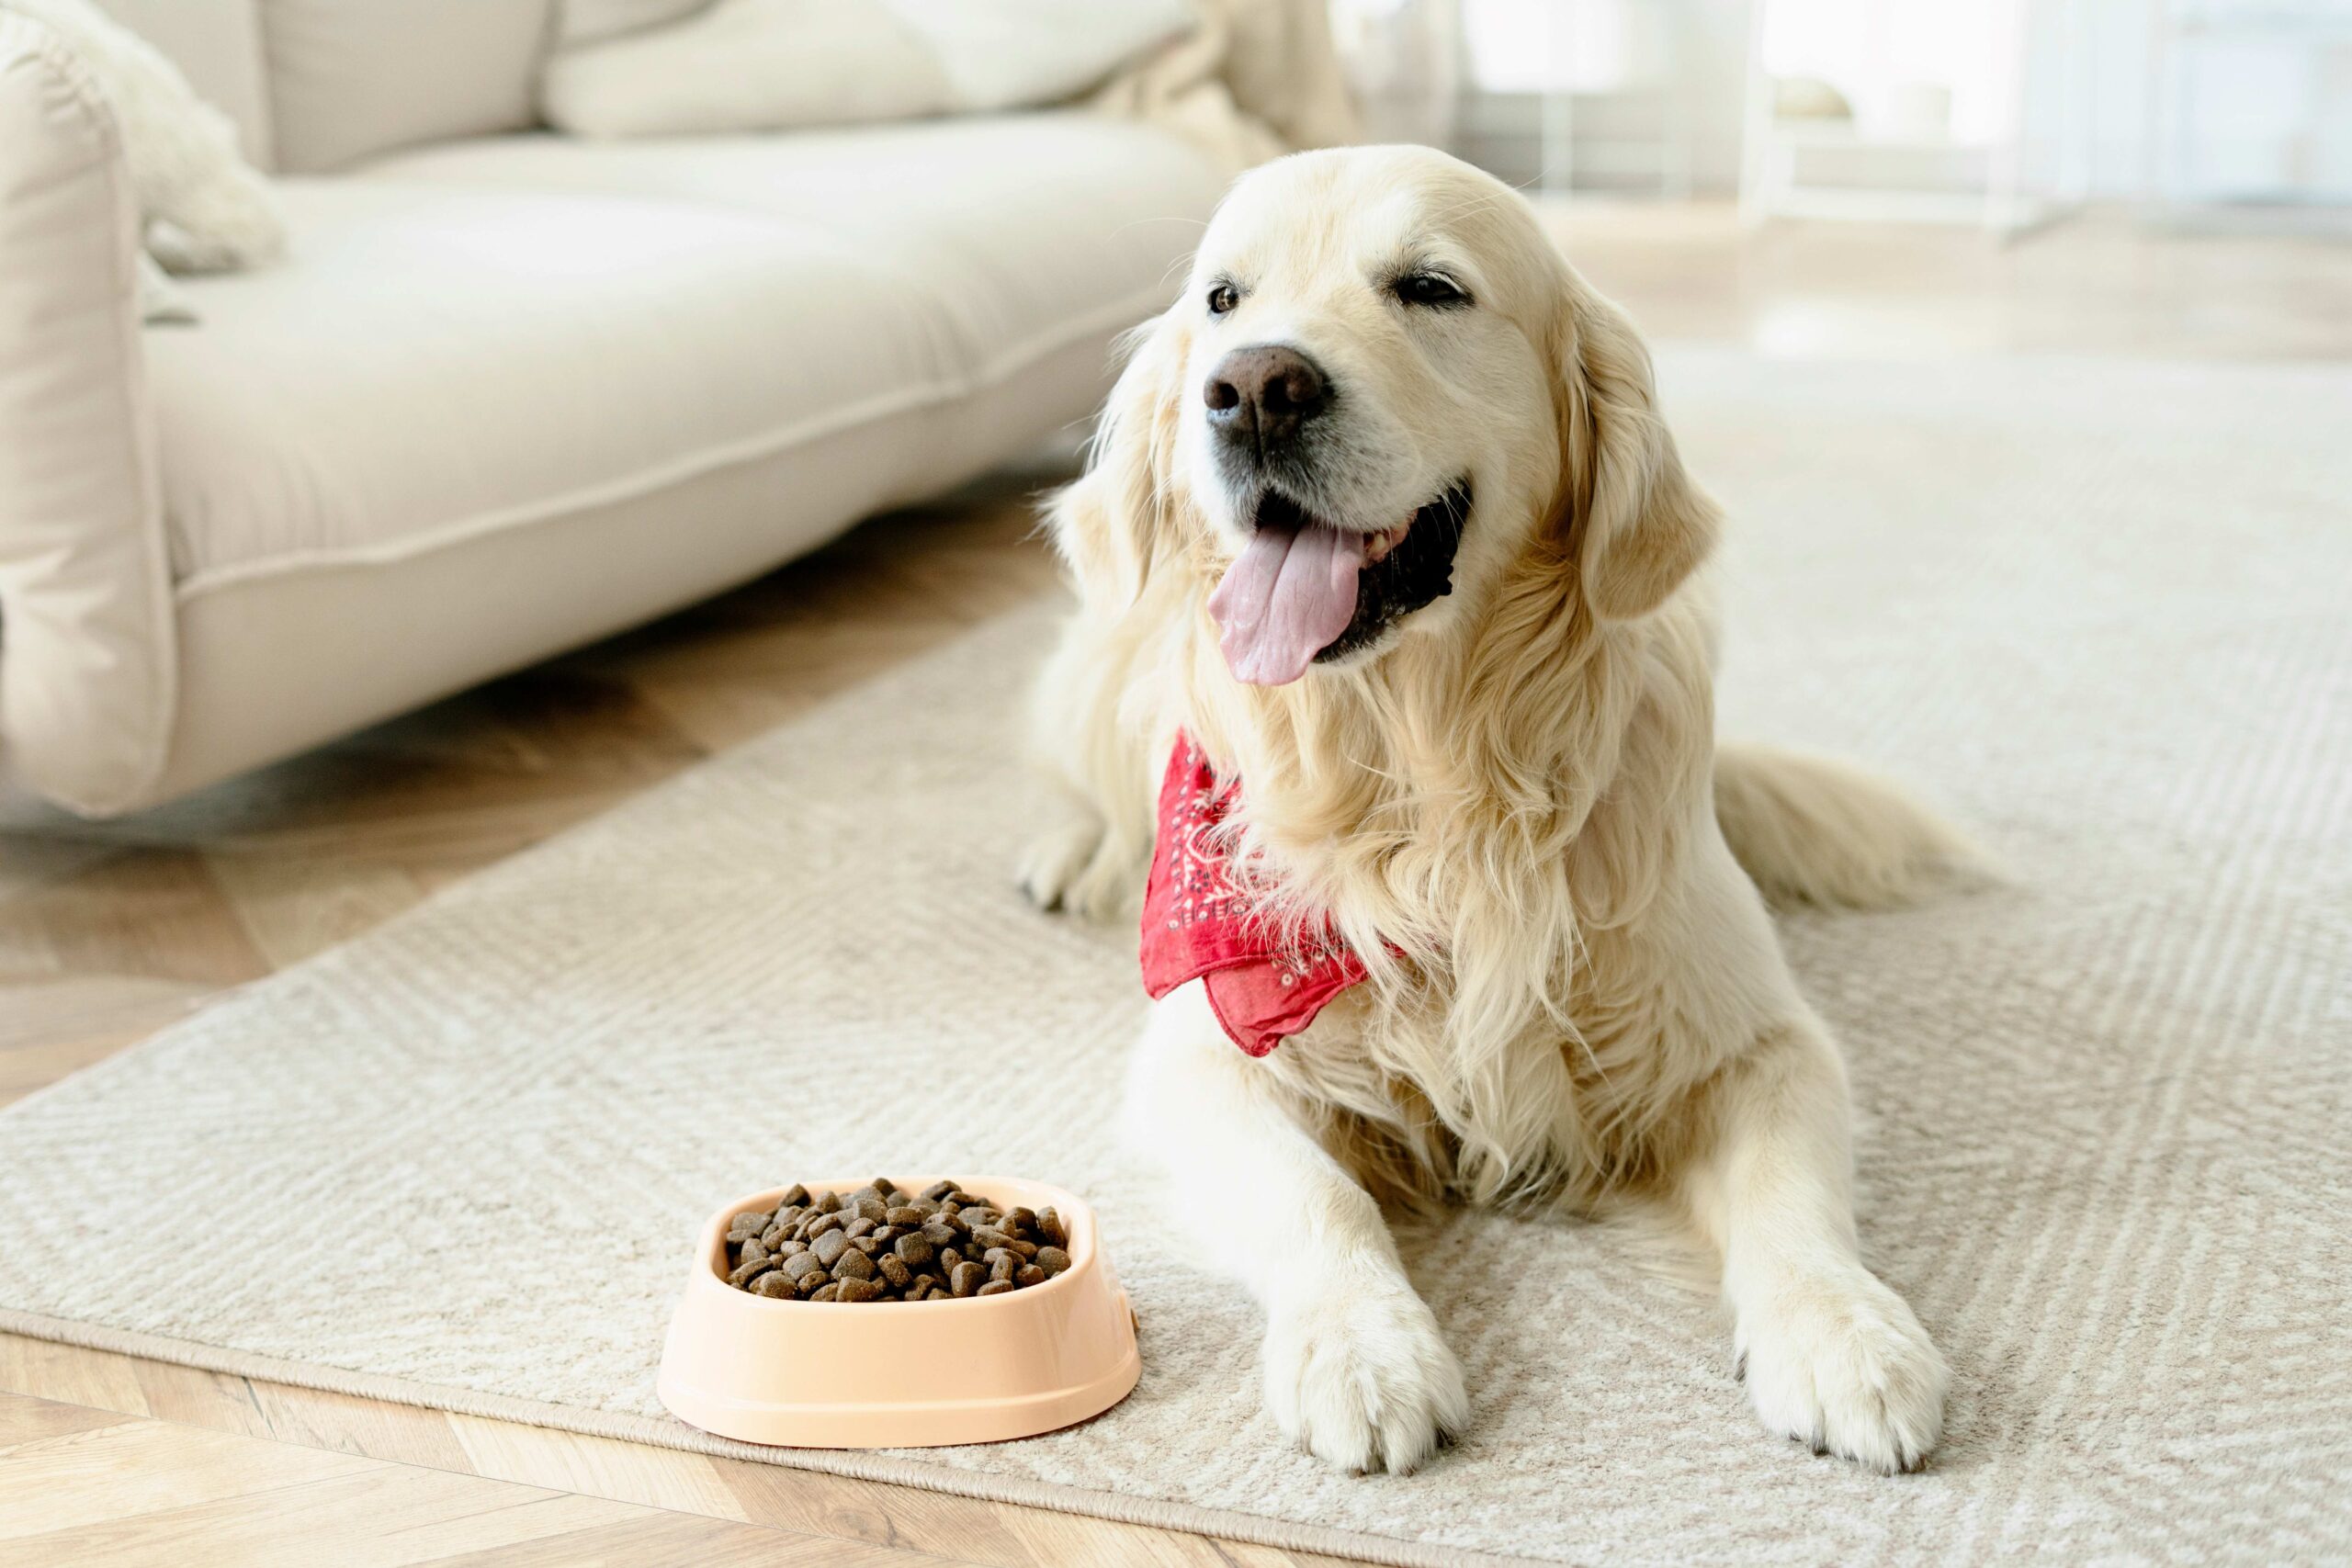 Bild von einem Golden Retriever Hund welcher auf dem Teppich liegt um gesundes Hundefutter zu essen